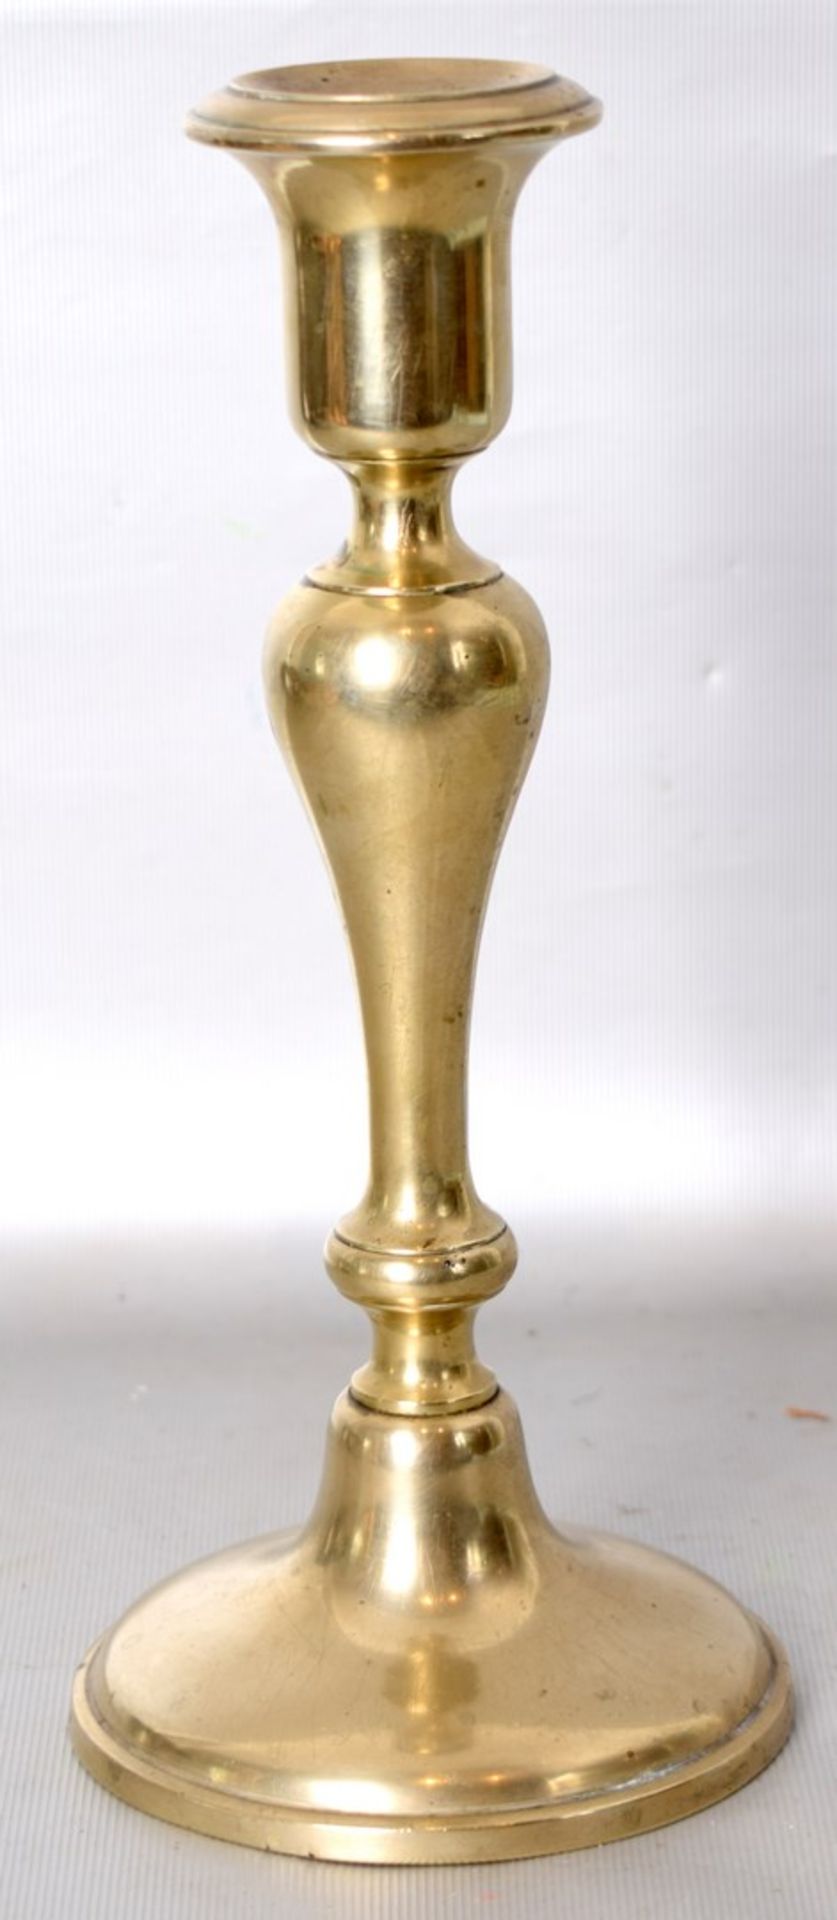 Leuchter Metall, 1-lichtig, runder Fuß und Schaft, H 25 cm, 19. Jh.